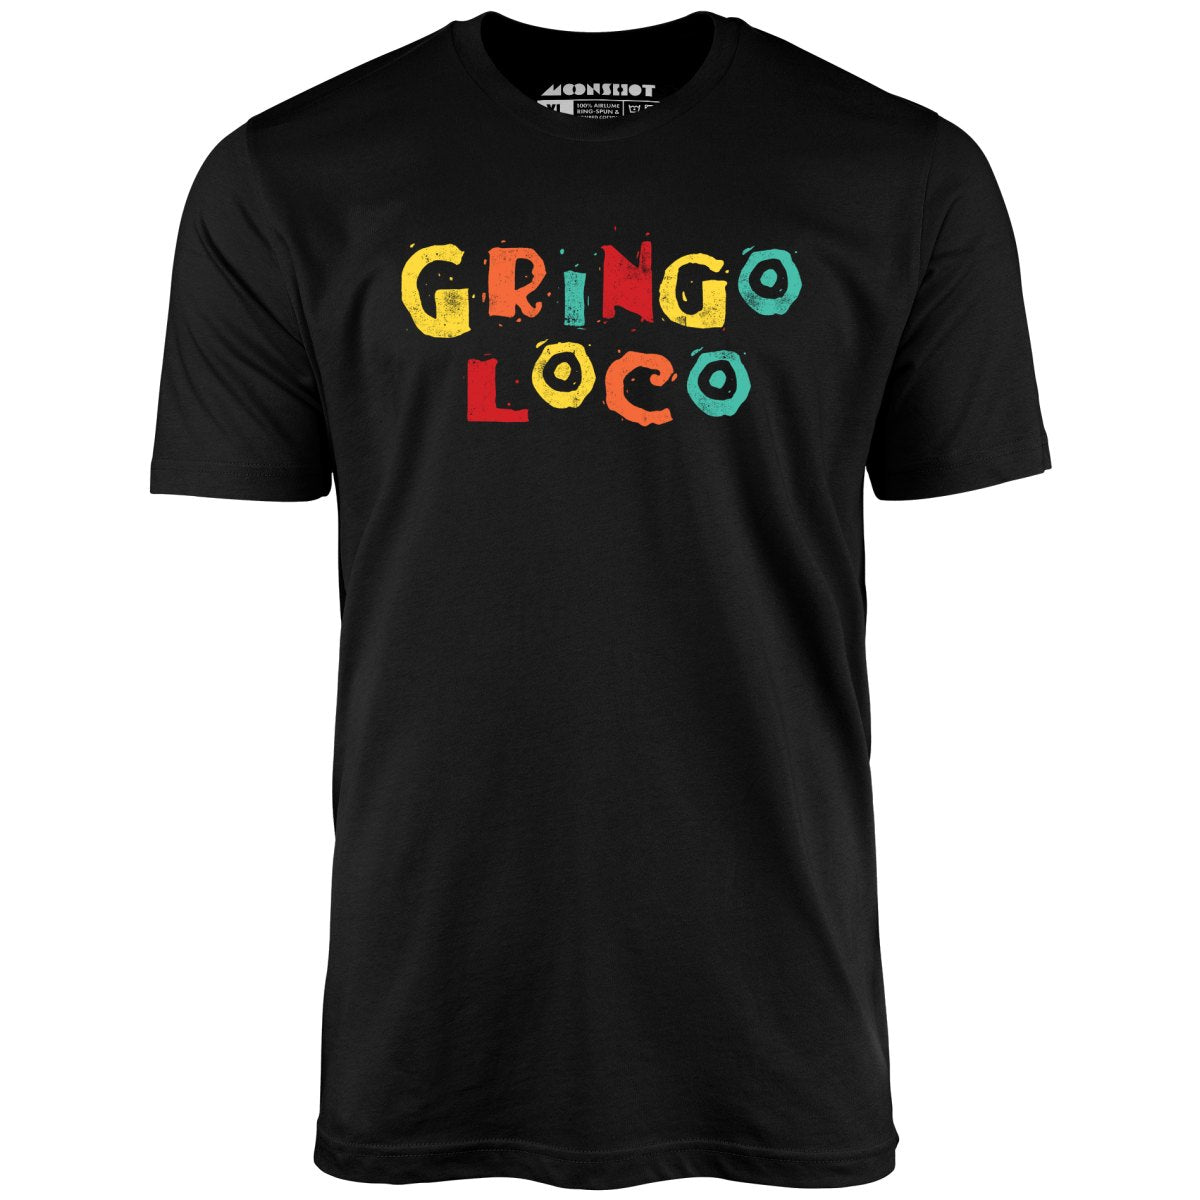 Gringo Loco - Unisex T-Shirt